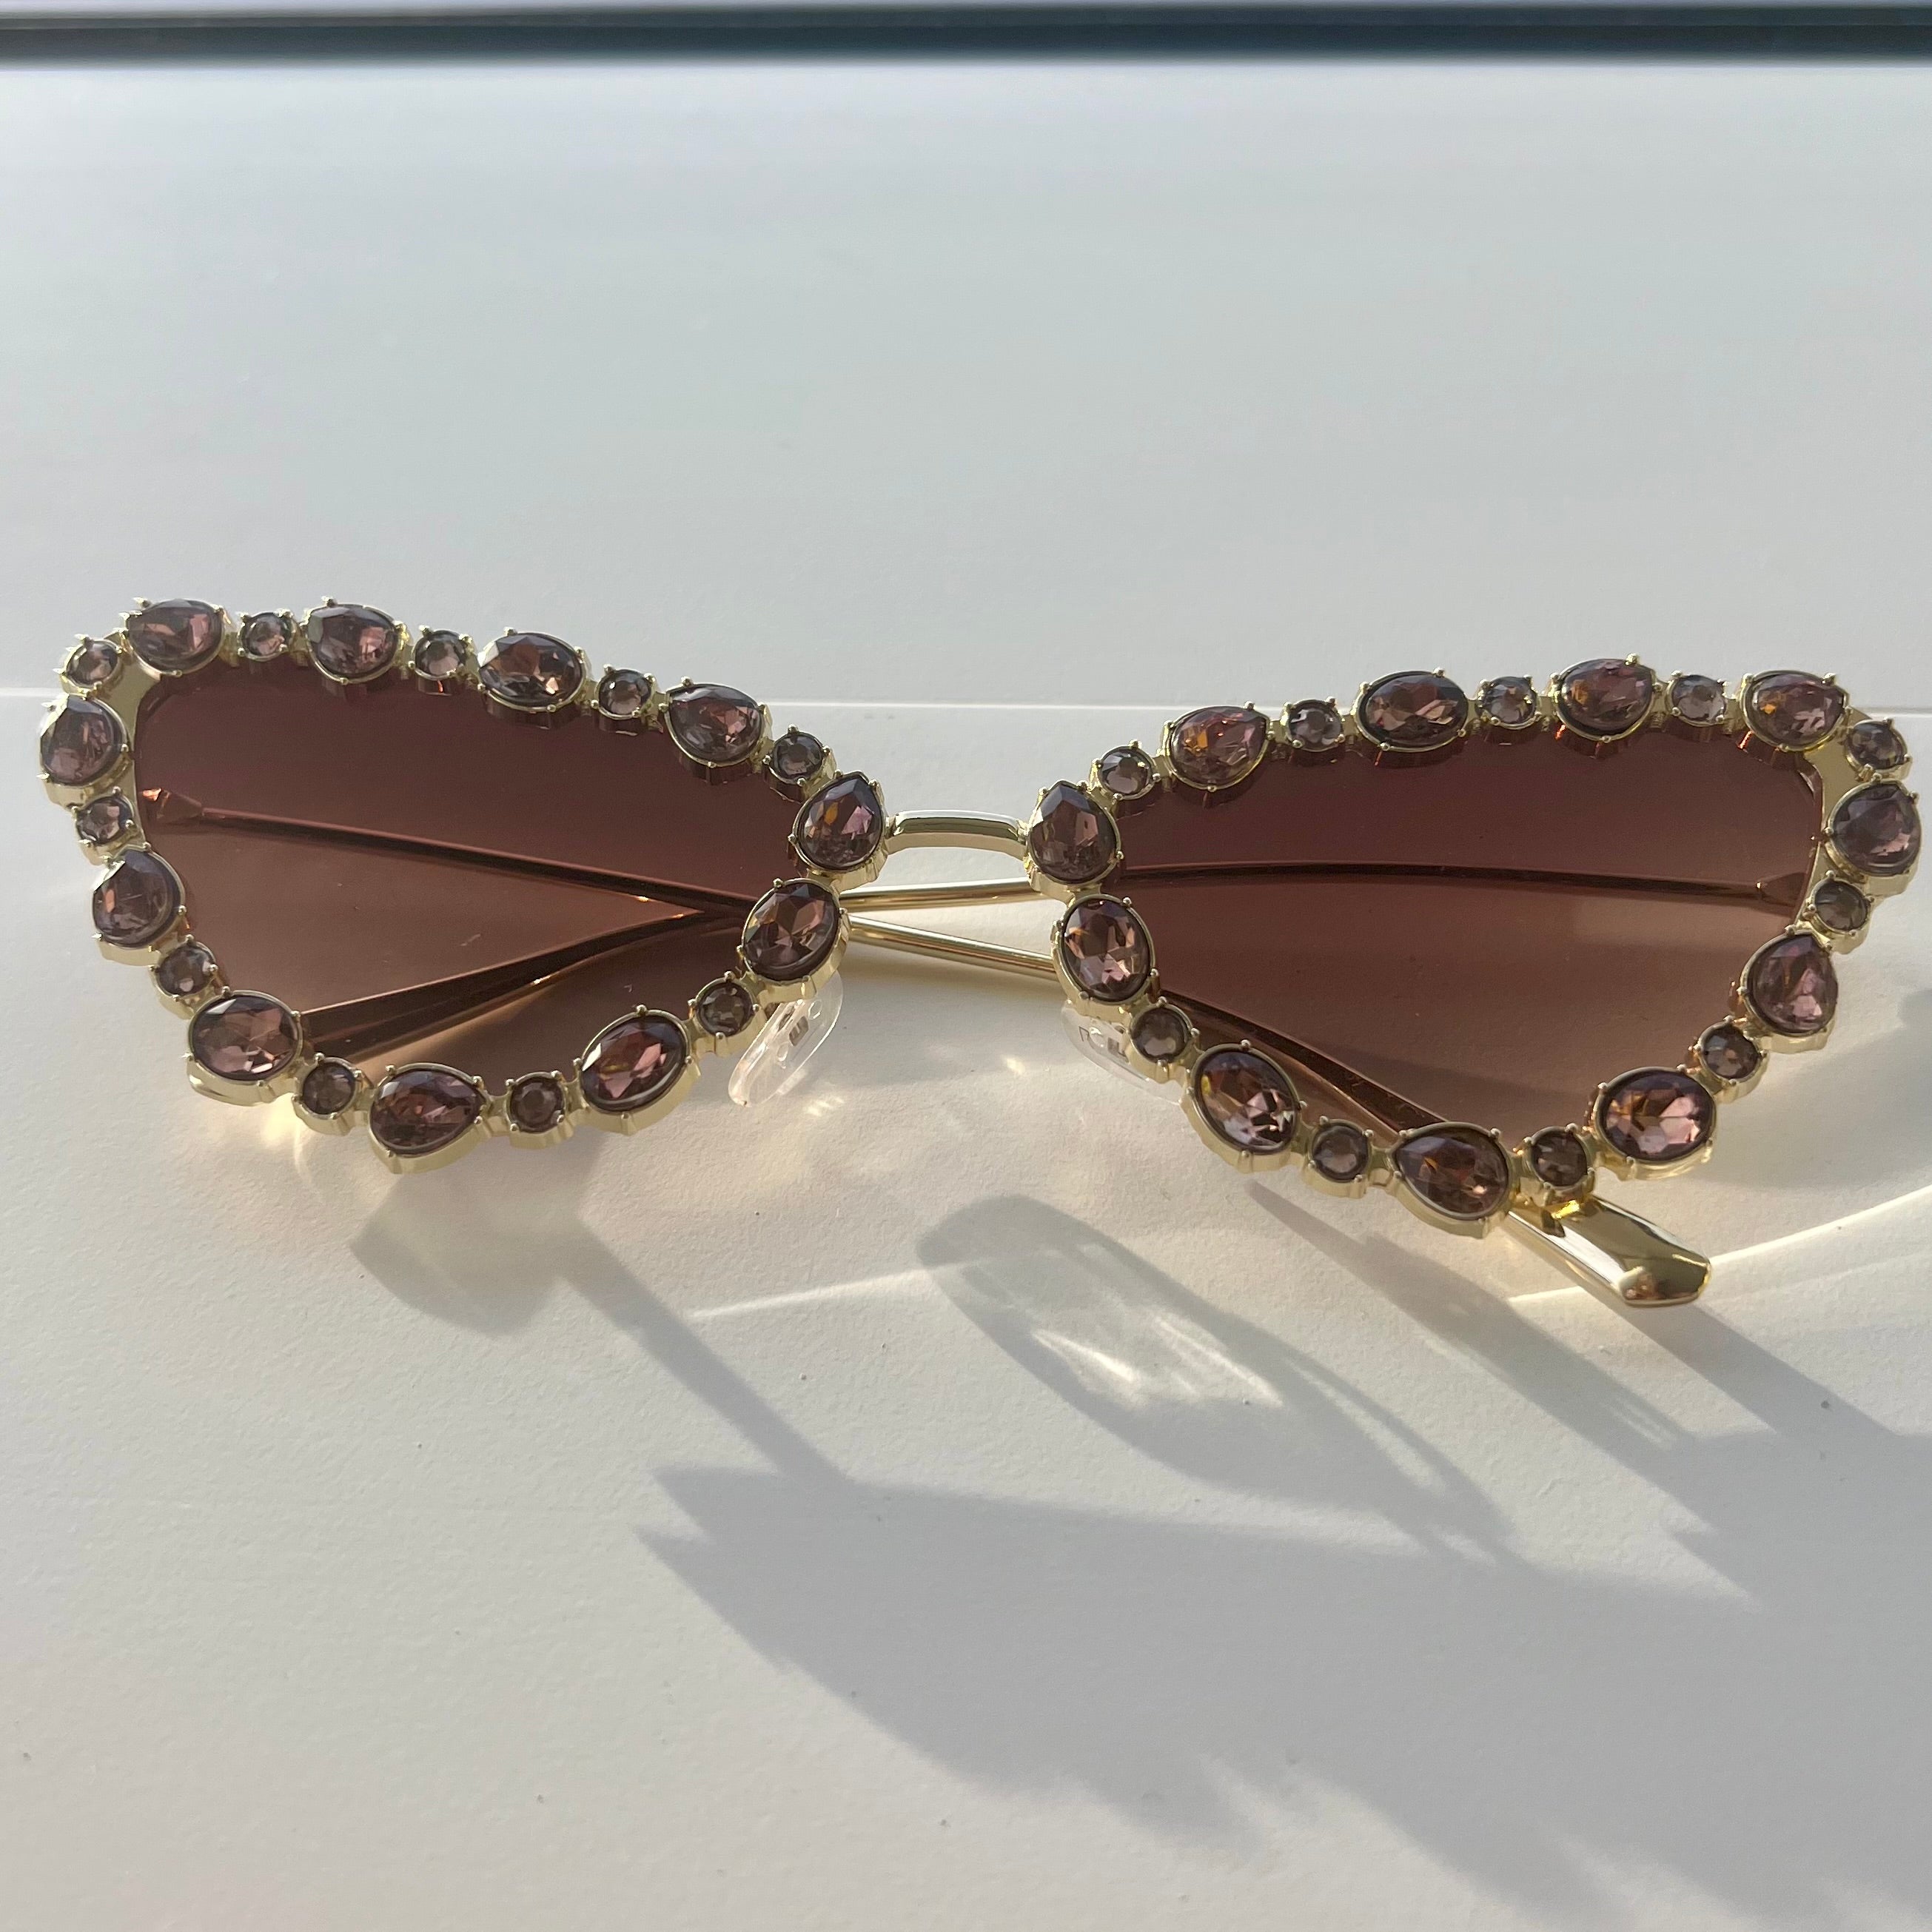 Beweled : Sunglasses